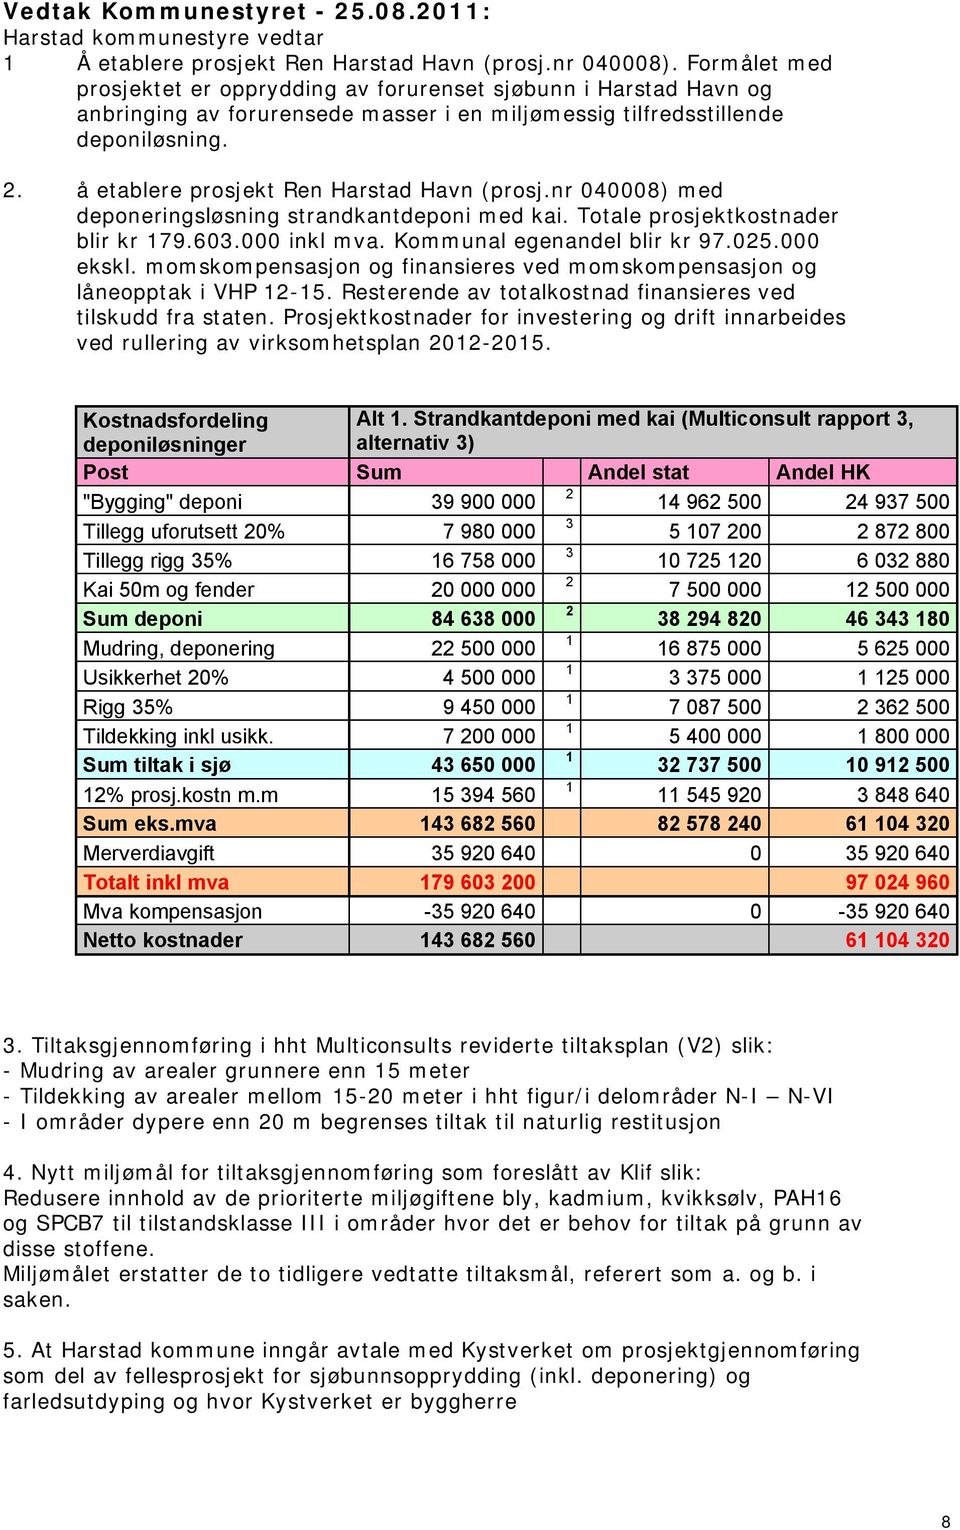 å etablere prosjekt Ren Harstad Havn (prosj.nr 040008) med deponeringsløsning strandkantdeponi med kai. Totale prosjektkostnader blir kr 79.603.000 inkl mva. Kommunal egenandel blir kr 97.025.